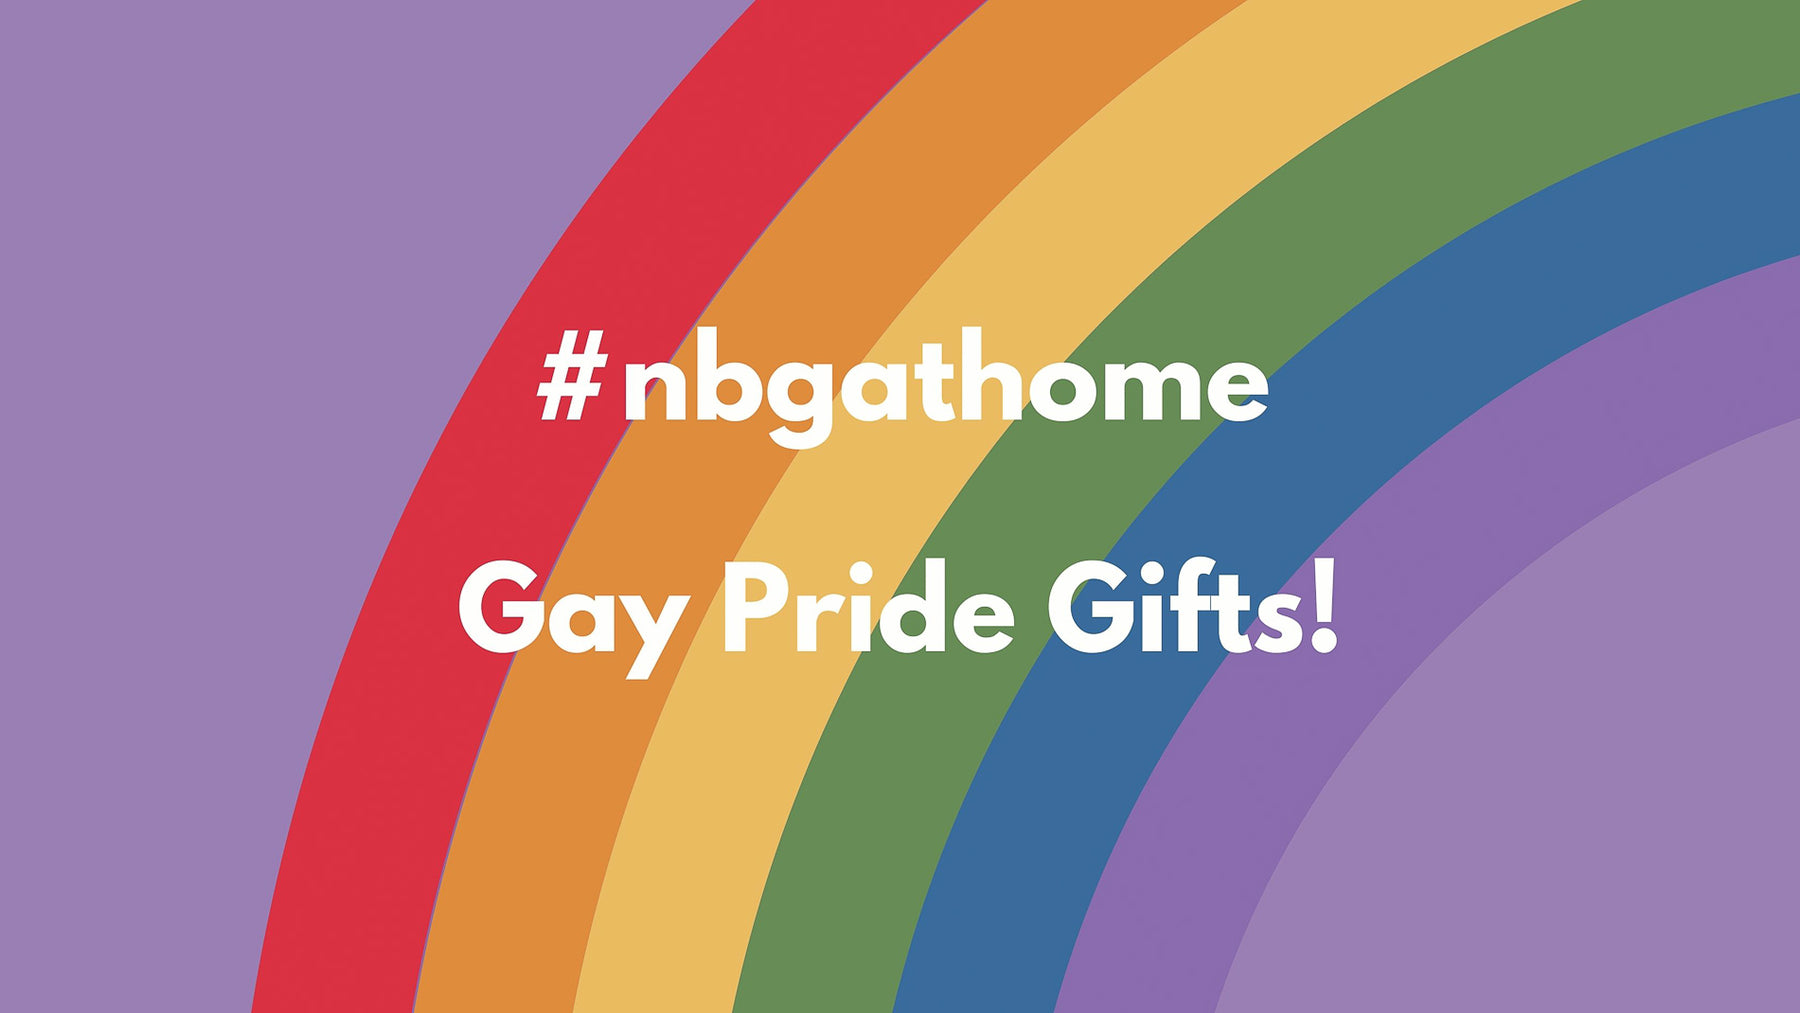 NBG at home! Gay pride gifts!